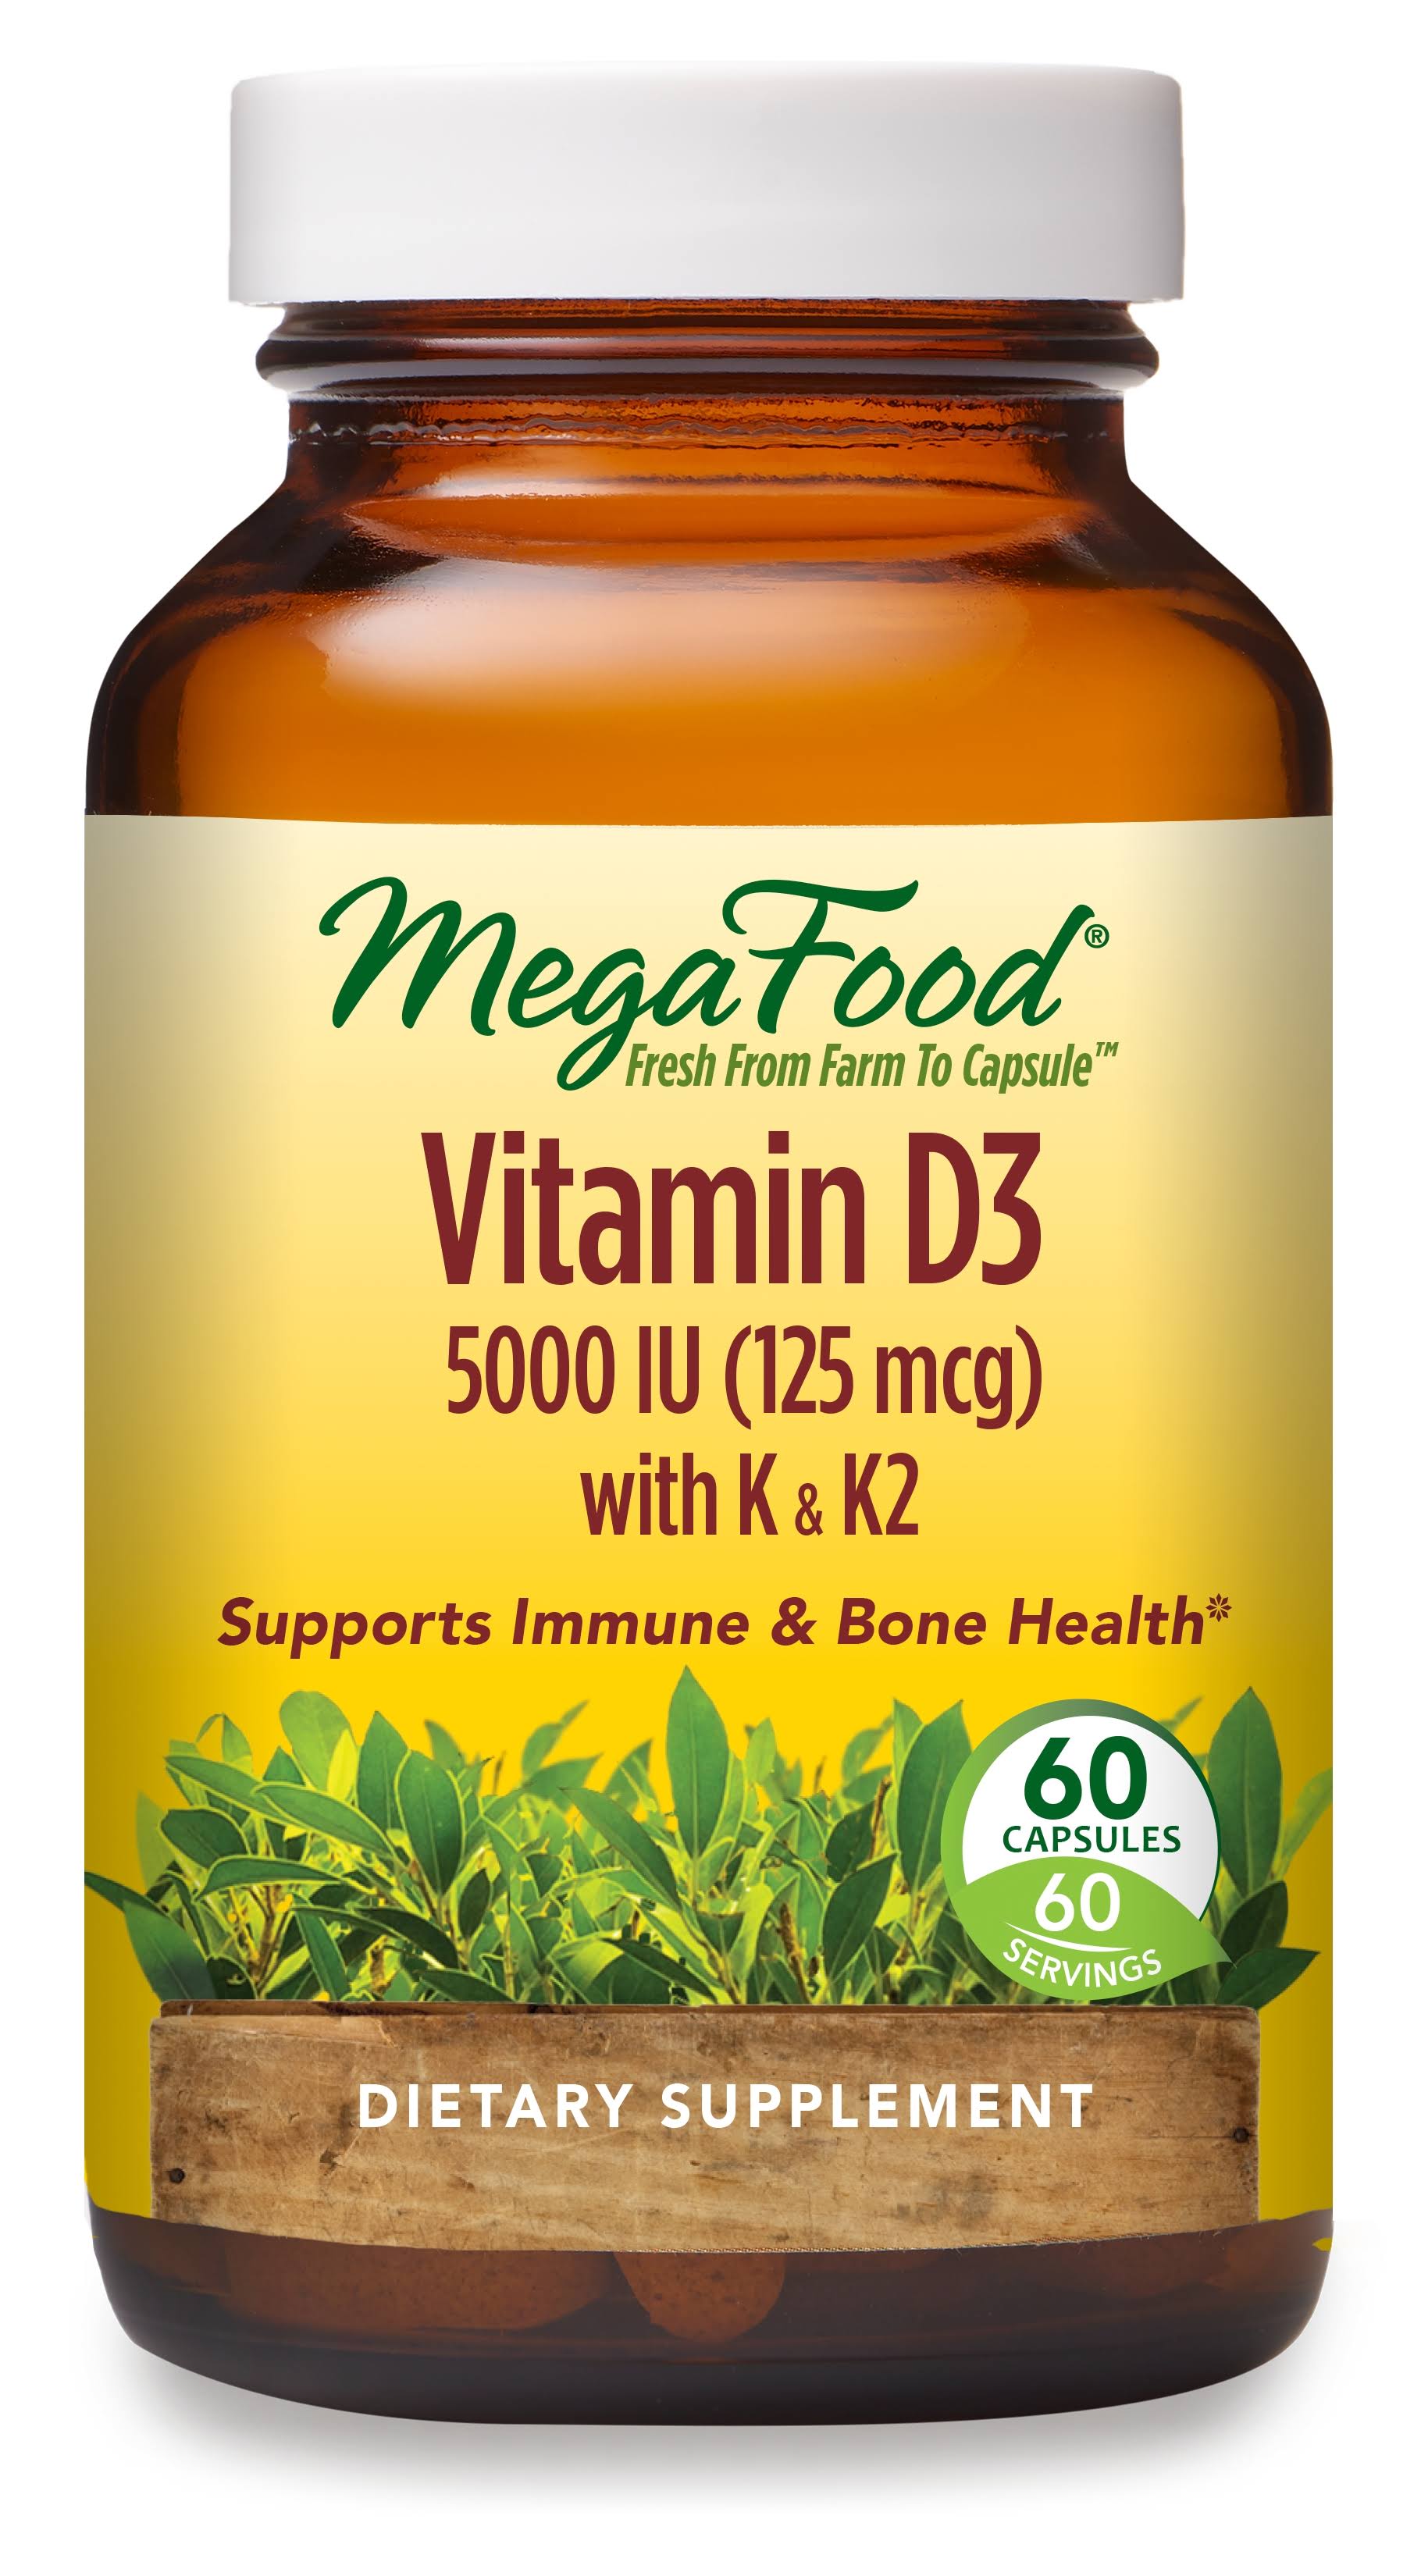 MegaFood - Vitamin D3 5000 IU with K & K2 - 60 Capsules